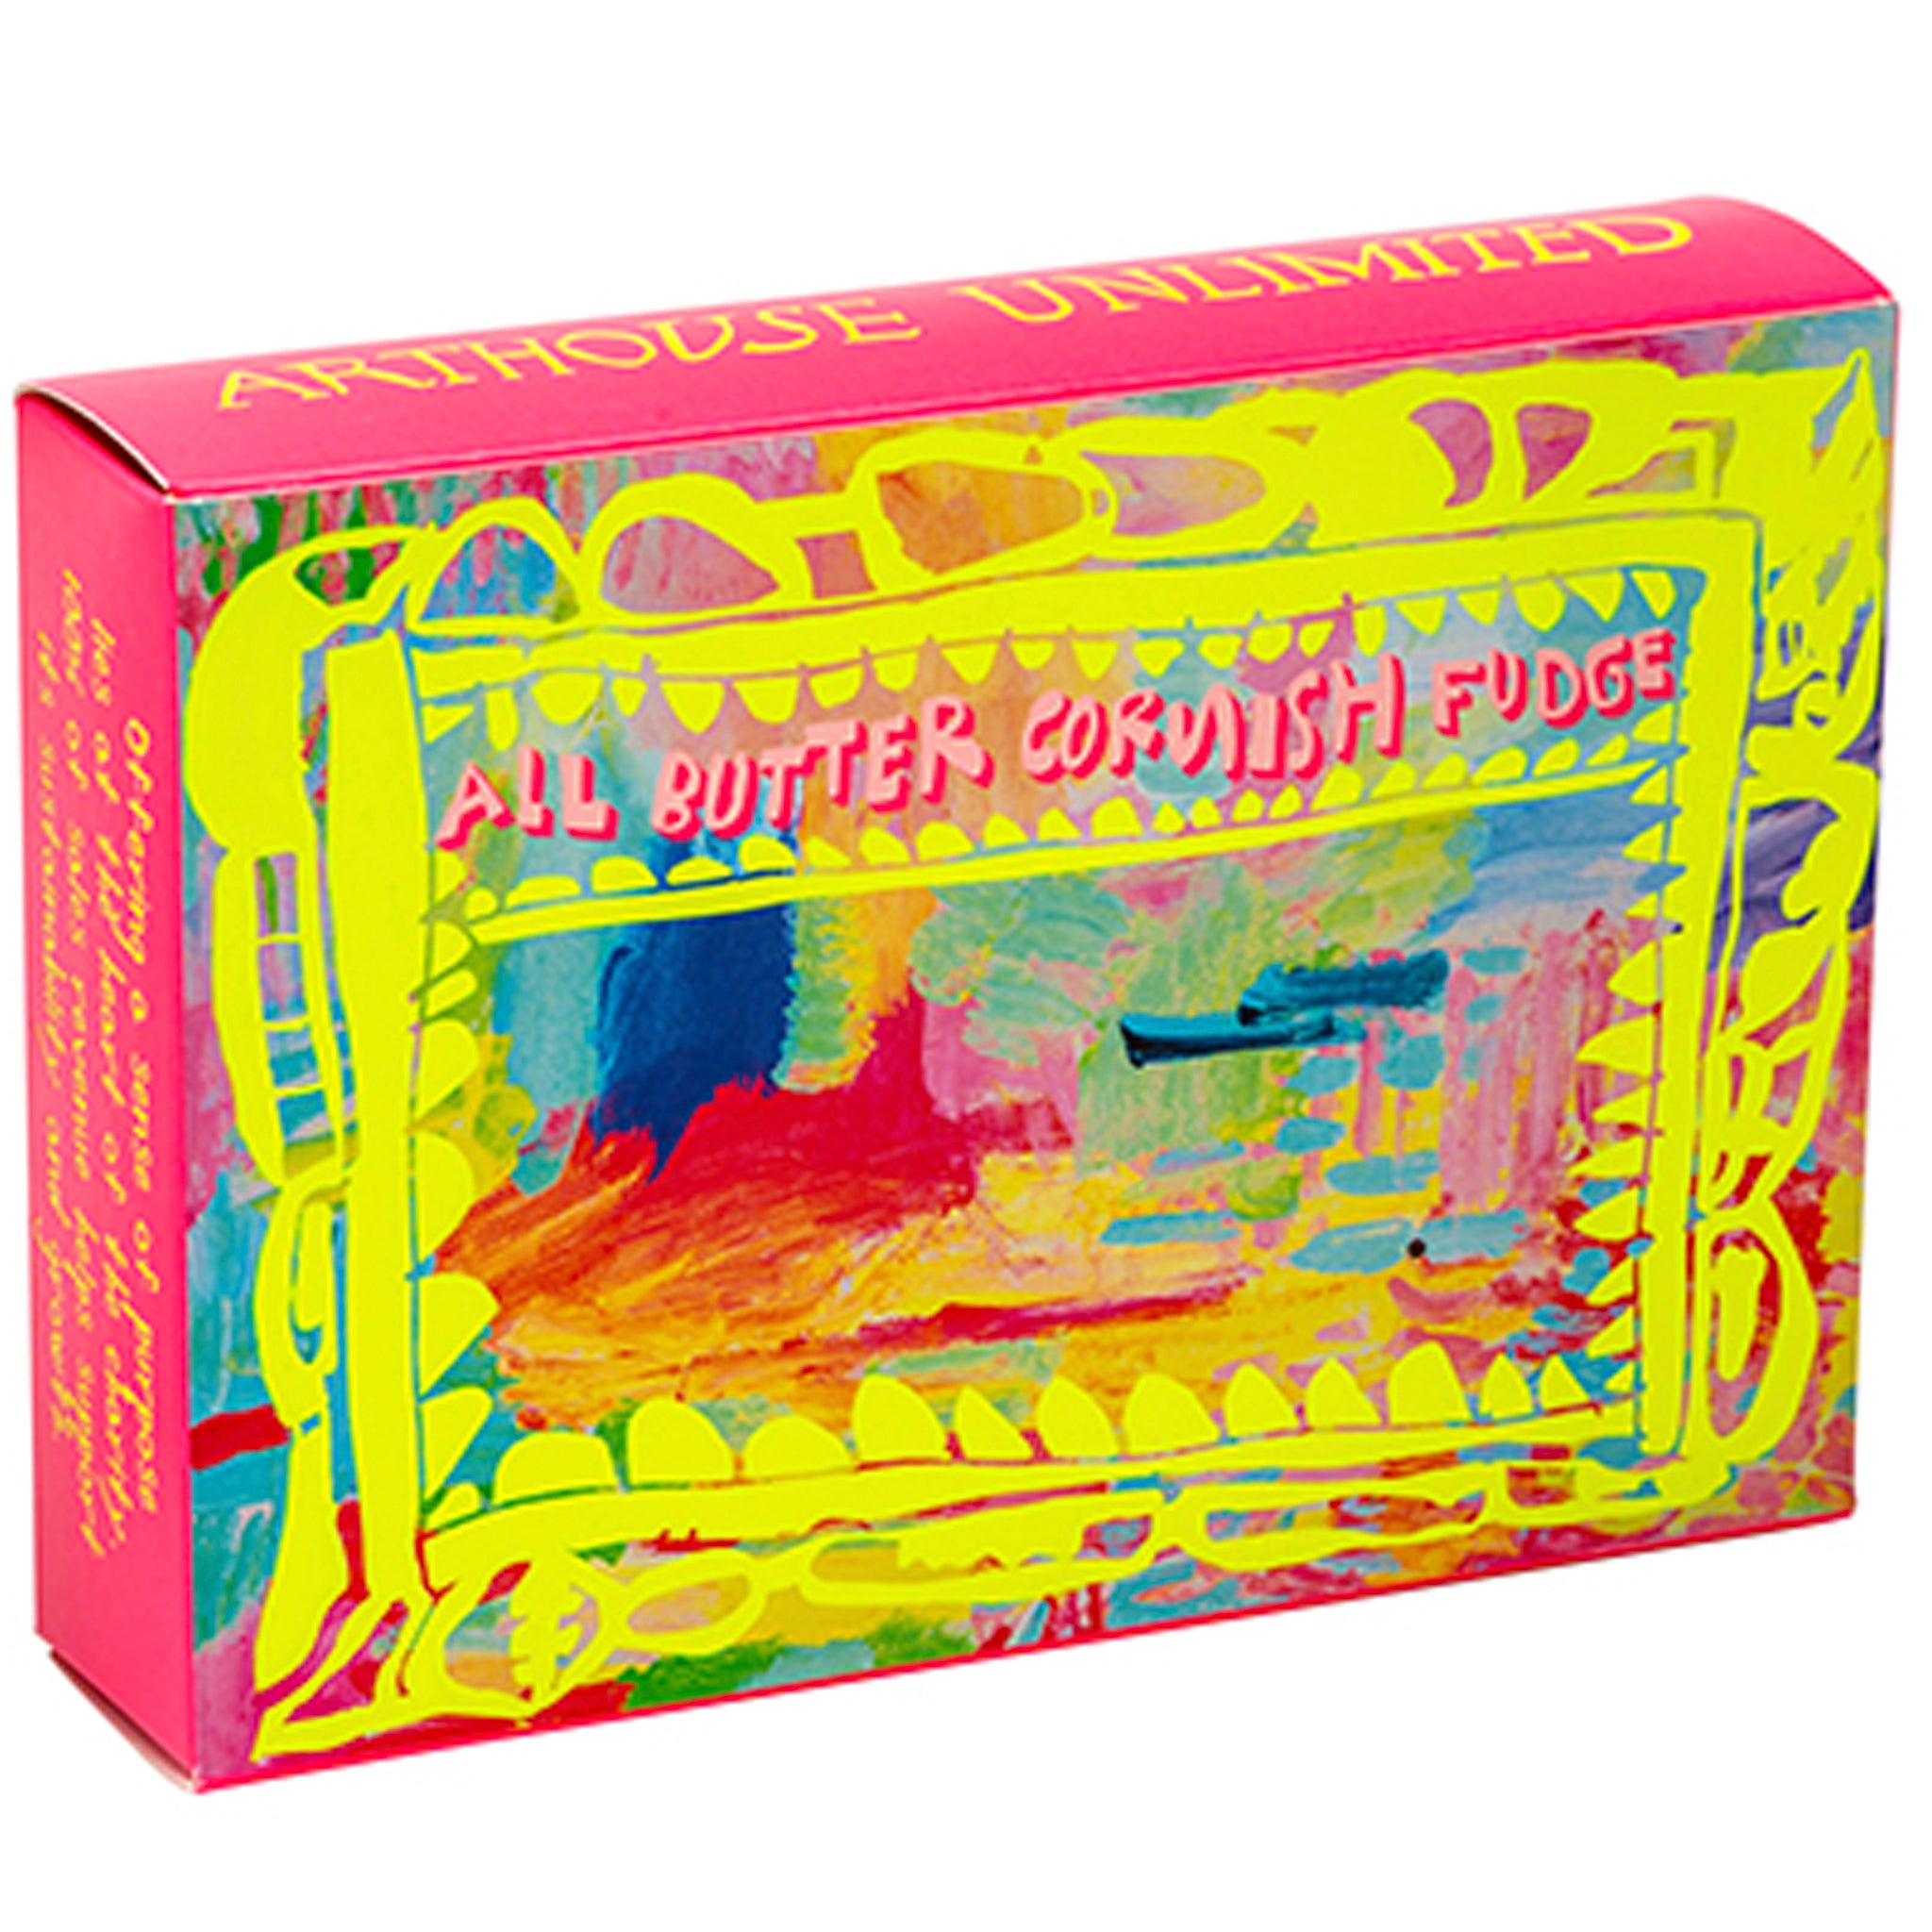 Bright coloured box of Colour Sugar All Butter Cornish Fudge